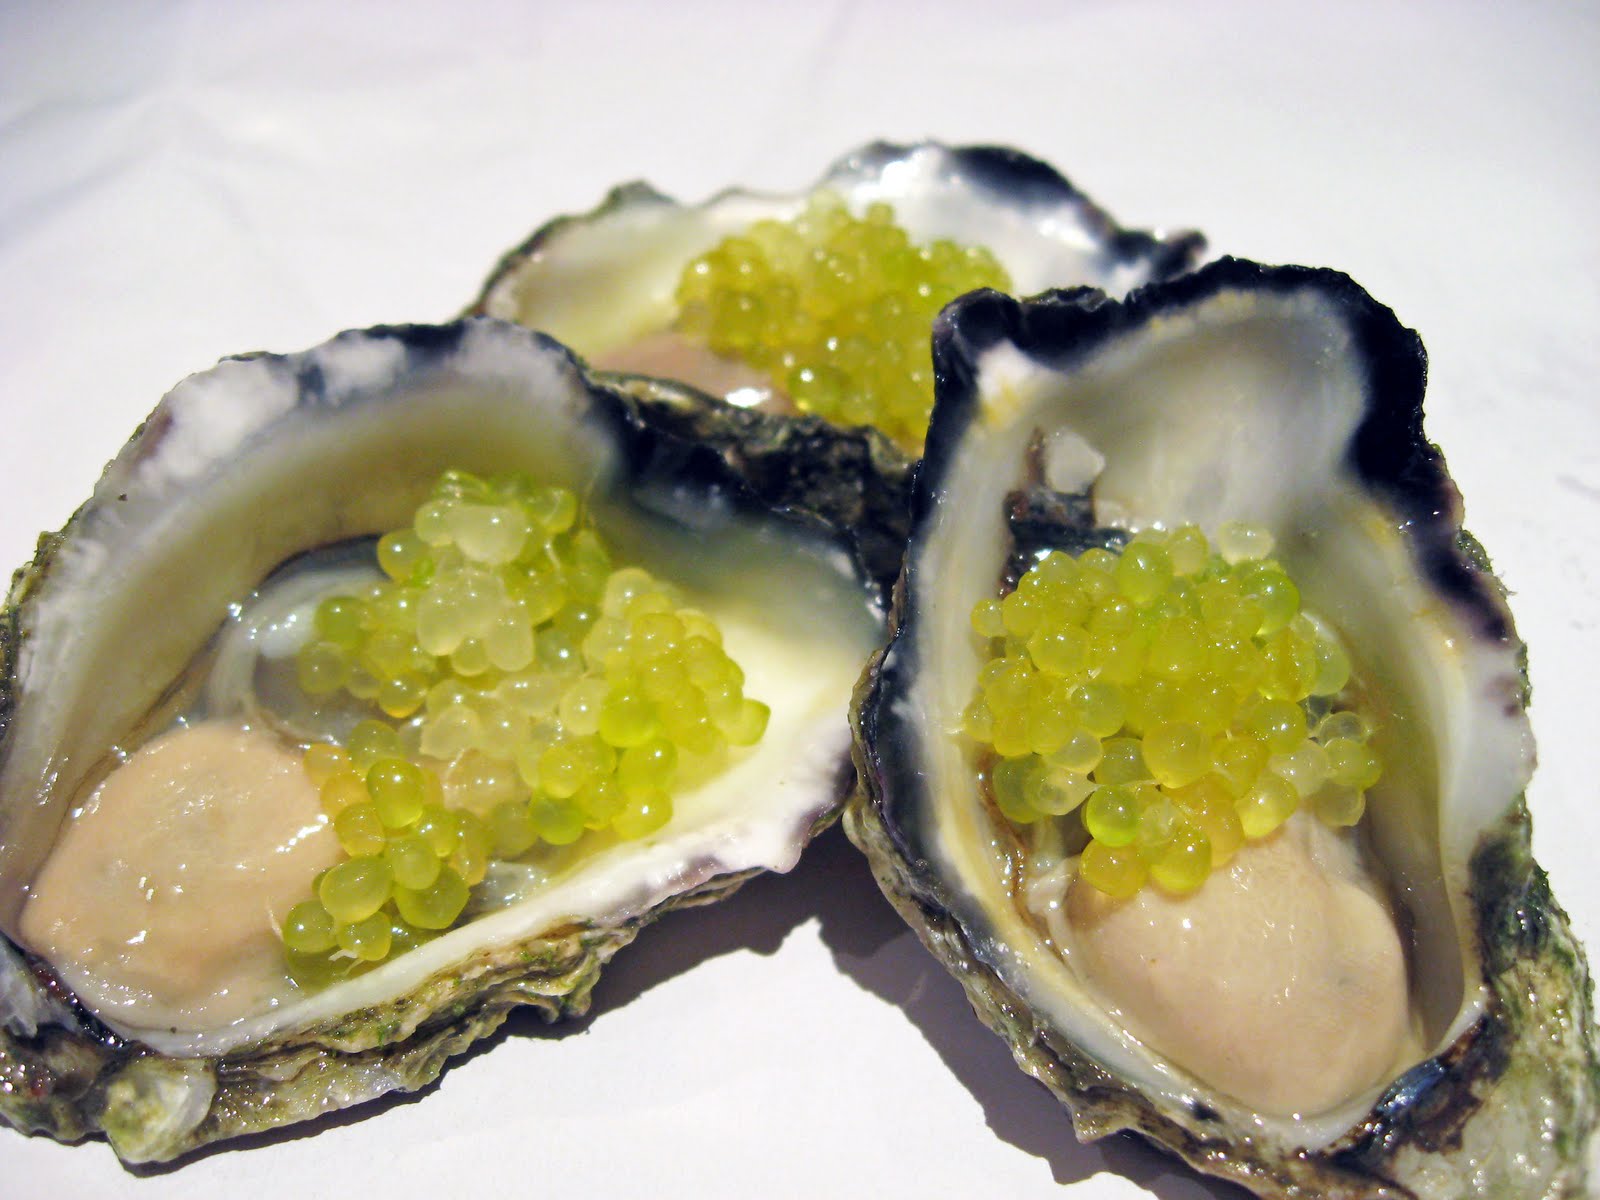 Loại chanh được mệnh danh là trứng cá muối của trái cây này rất hợp để ăn với các món hải sản.